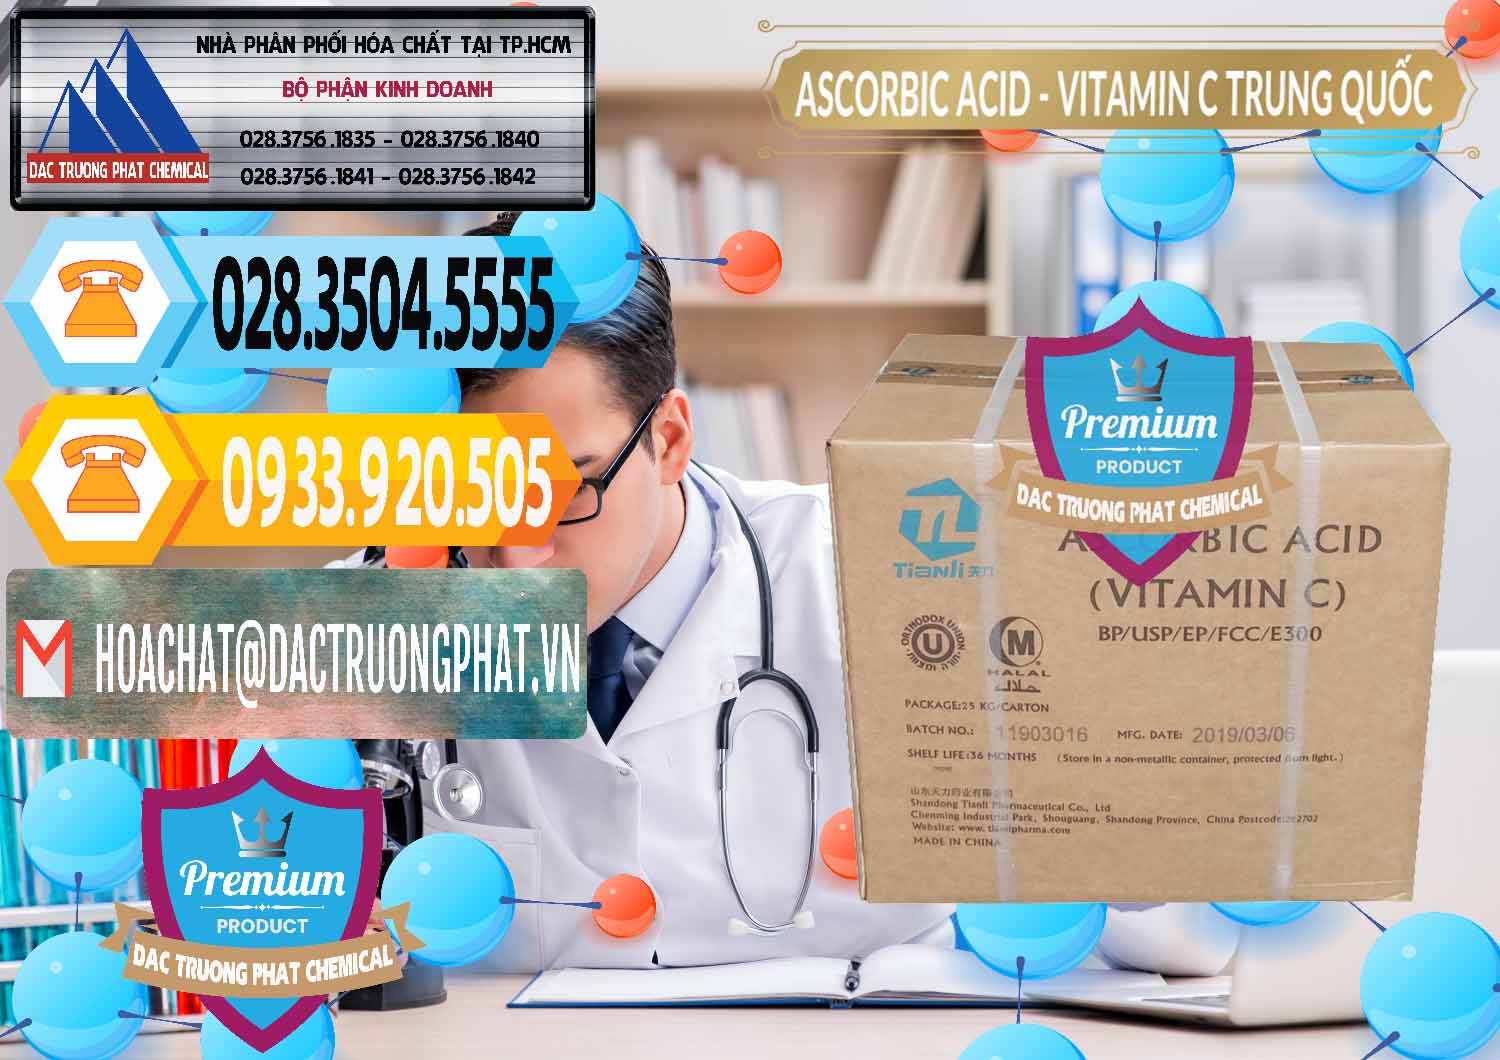 Nơi bán Axit Ascorbic - Vitamin C Trung Quốc China - 0309 - Cung cấp _ kinh doanh hóa chất tại TP.HCM - hoachattayrua.net